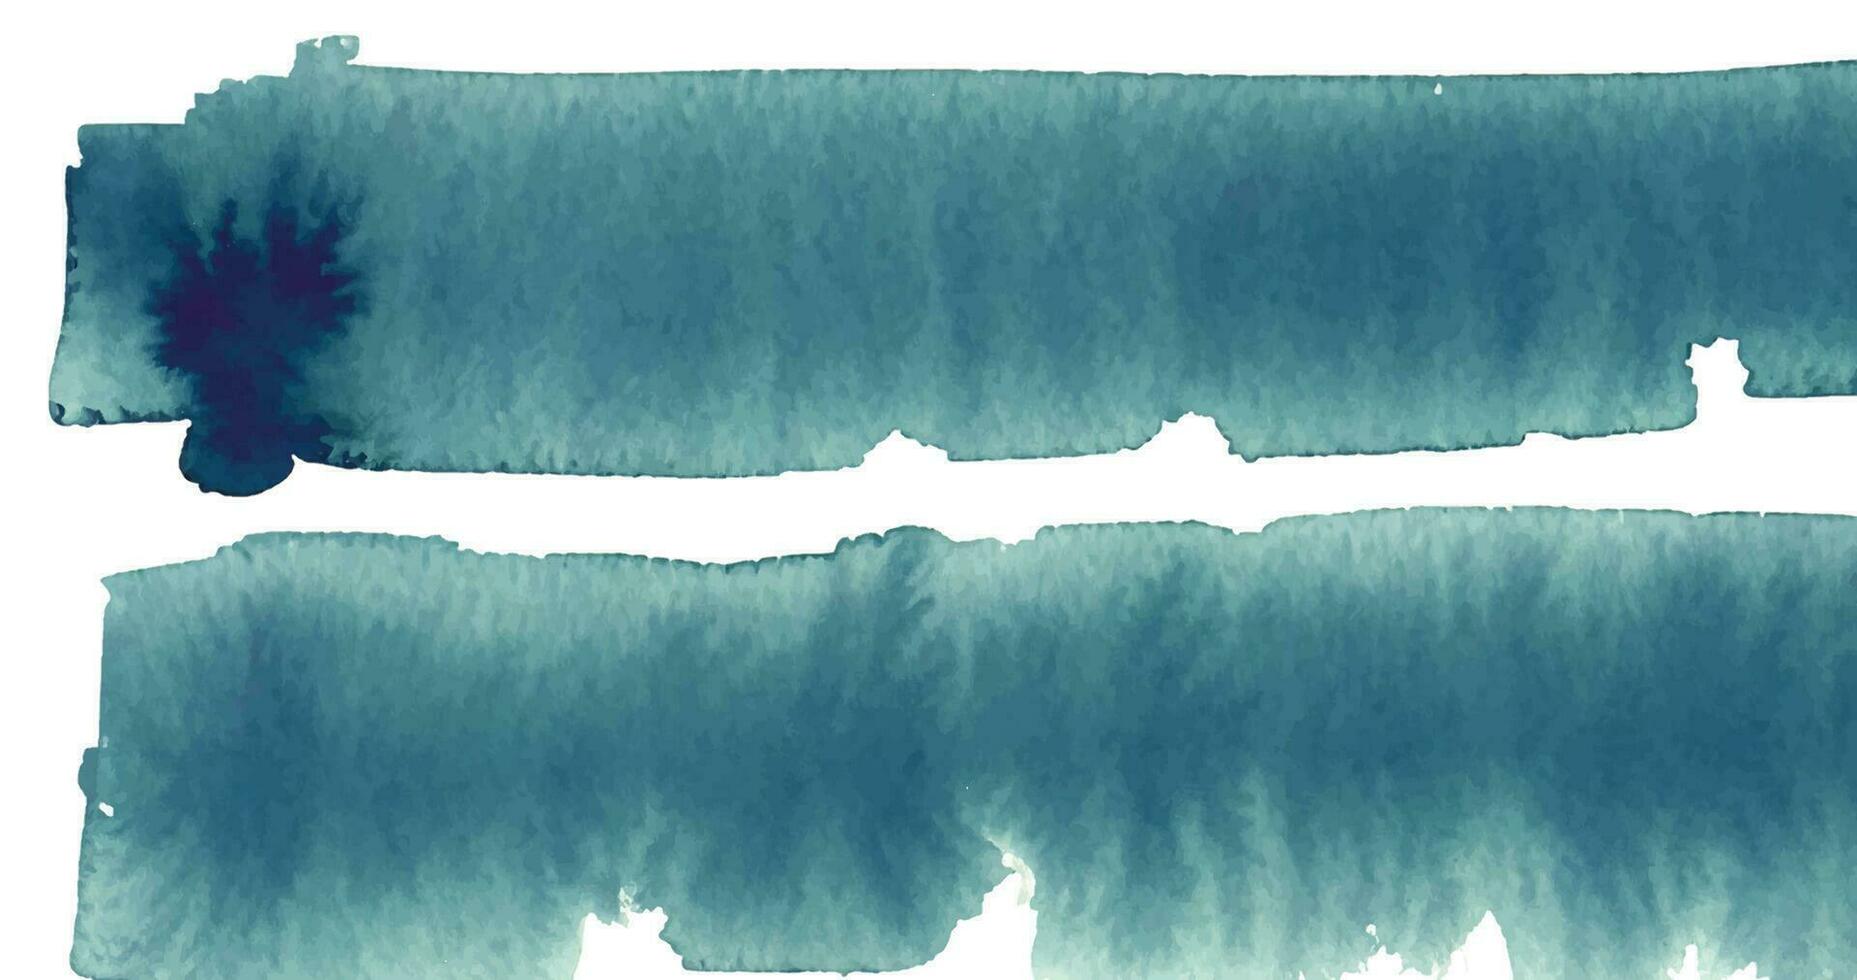 besmeurd waterverf tinten kader, zacht turkoois kleur waterverf illustratie, creatief achtergrond. aquarel geschilderd getextureerde sjabloon voor wijnoogst ontwerp, uitnodiging kaart vector